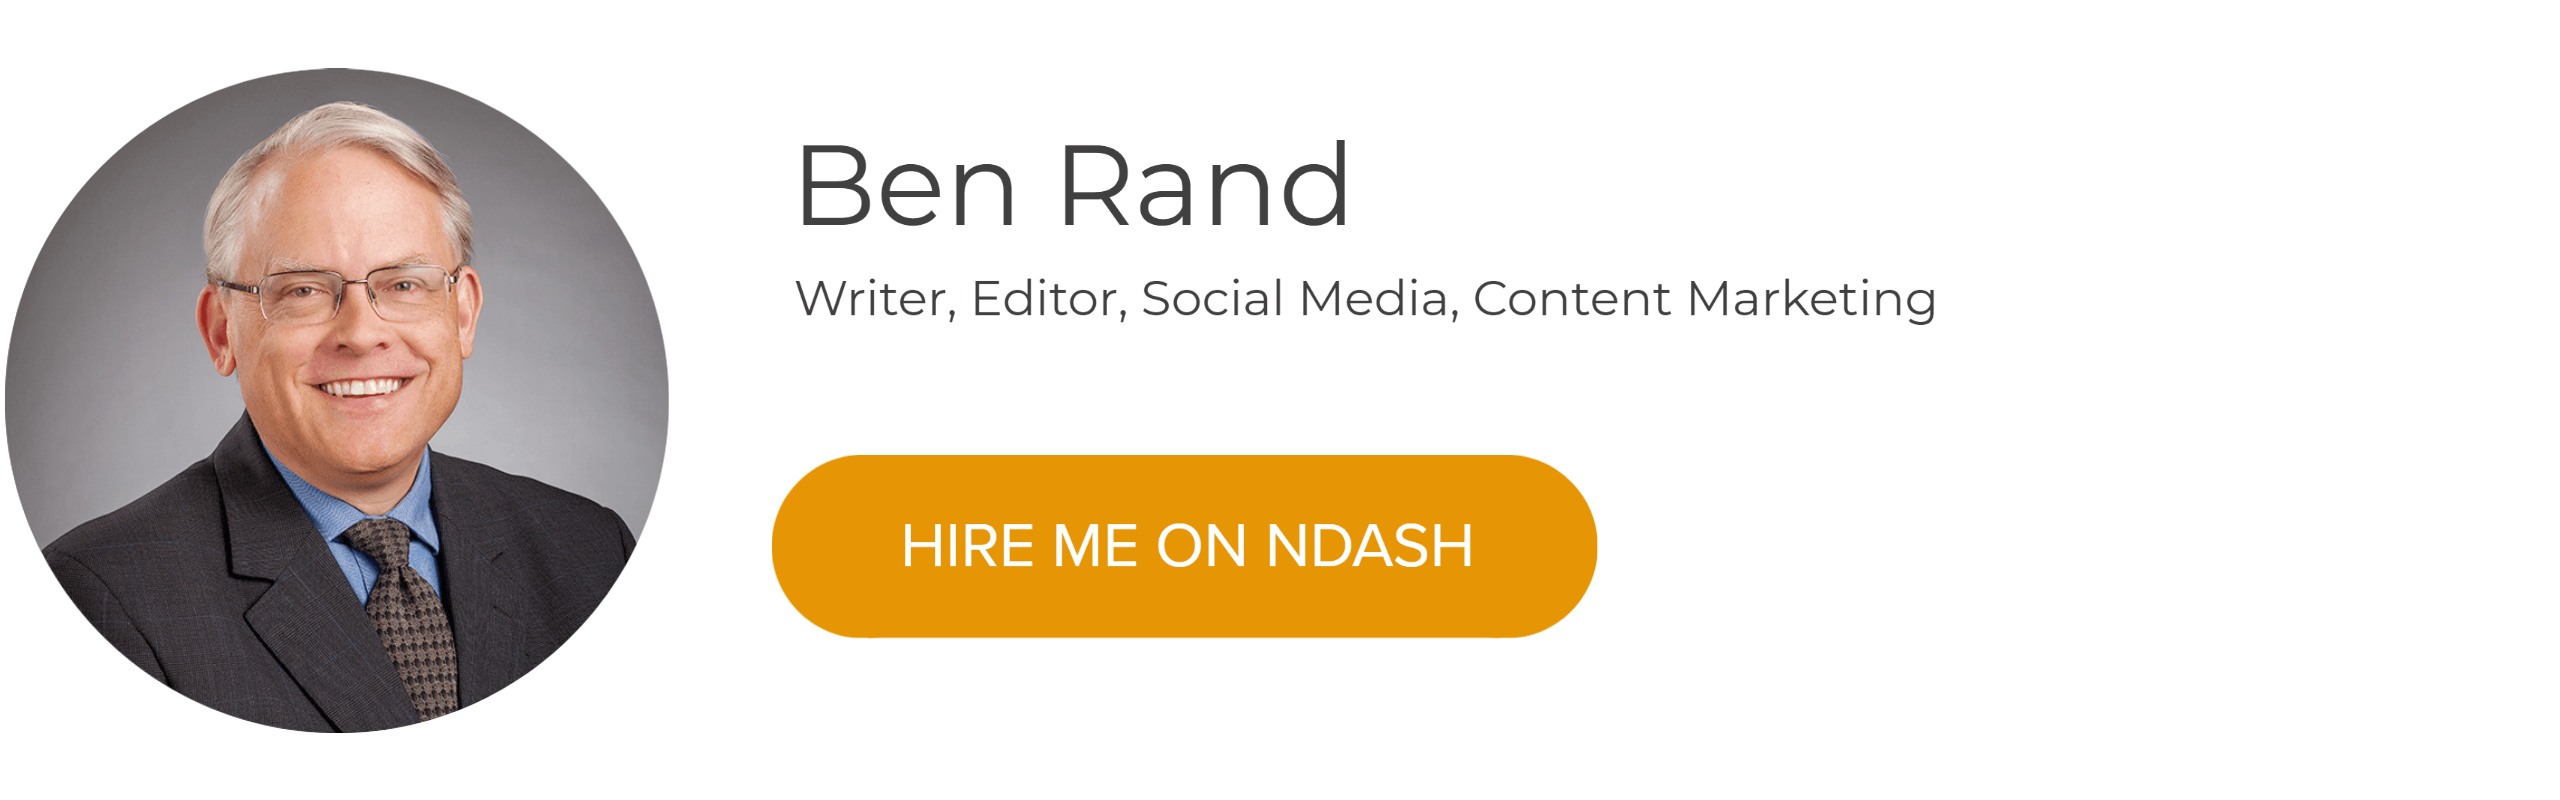 Ben Rand: Writer, Editor, Social Media, Content Marketing